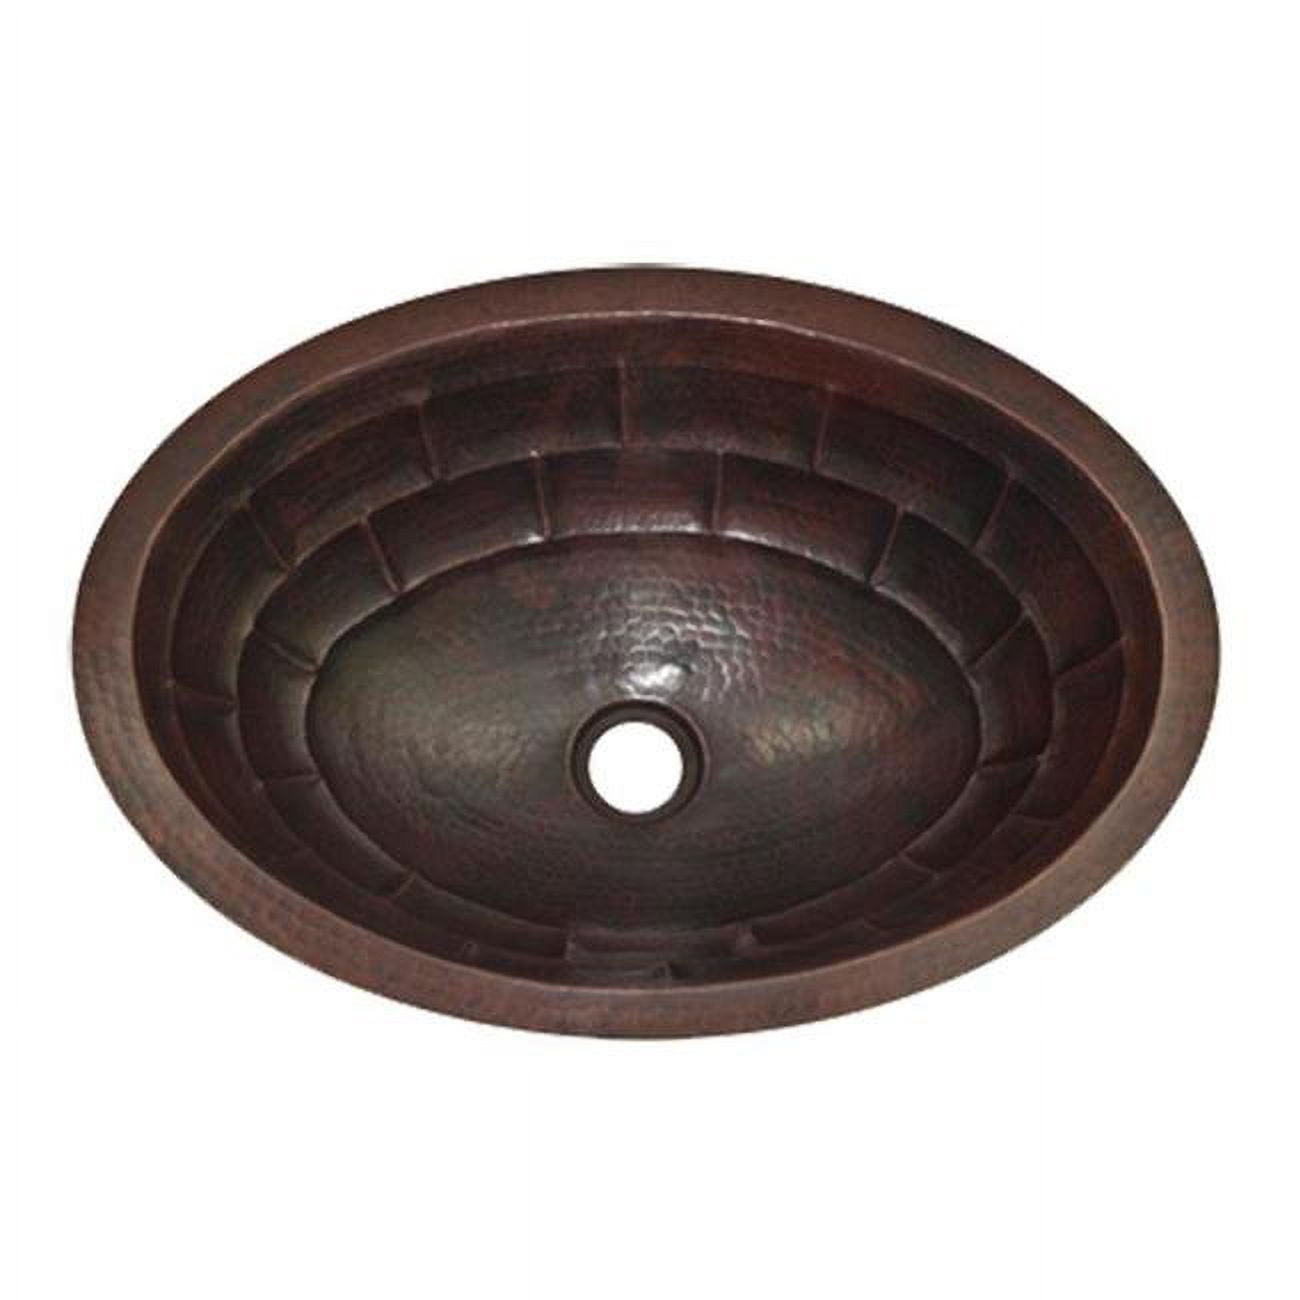 Cos-ts-19-fl-db Copper Oval Bath Sink, Dark Brown - Turtle Shell Design - 6 X 14 X 19 In.